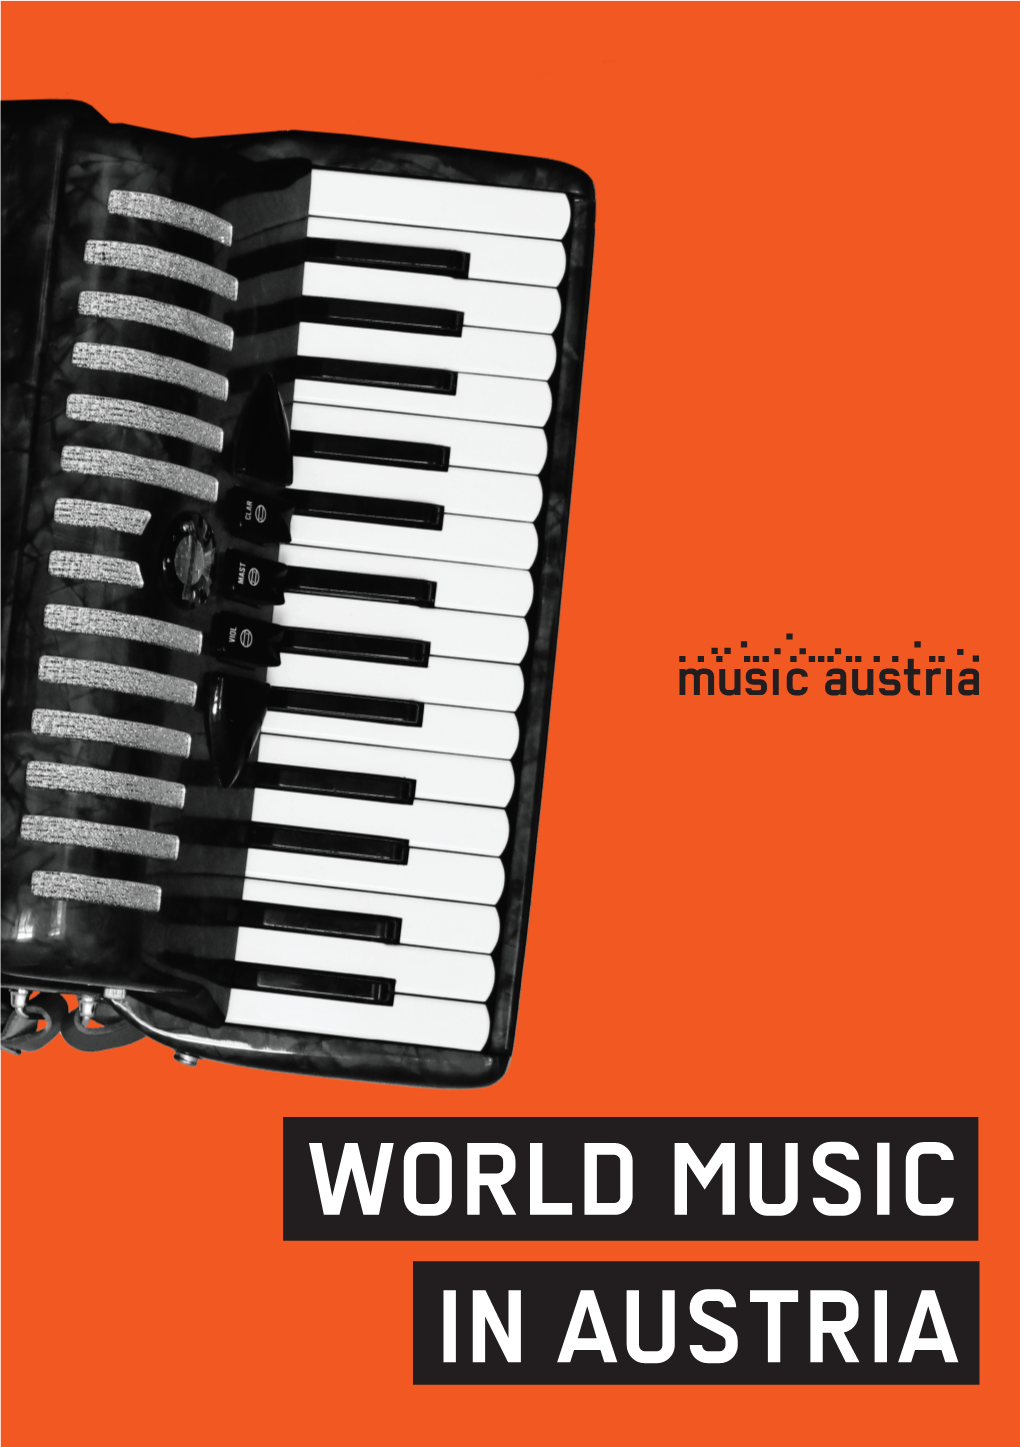 In Austria World Music